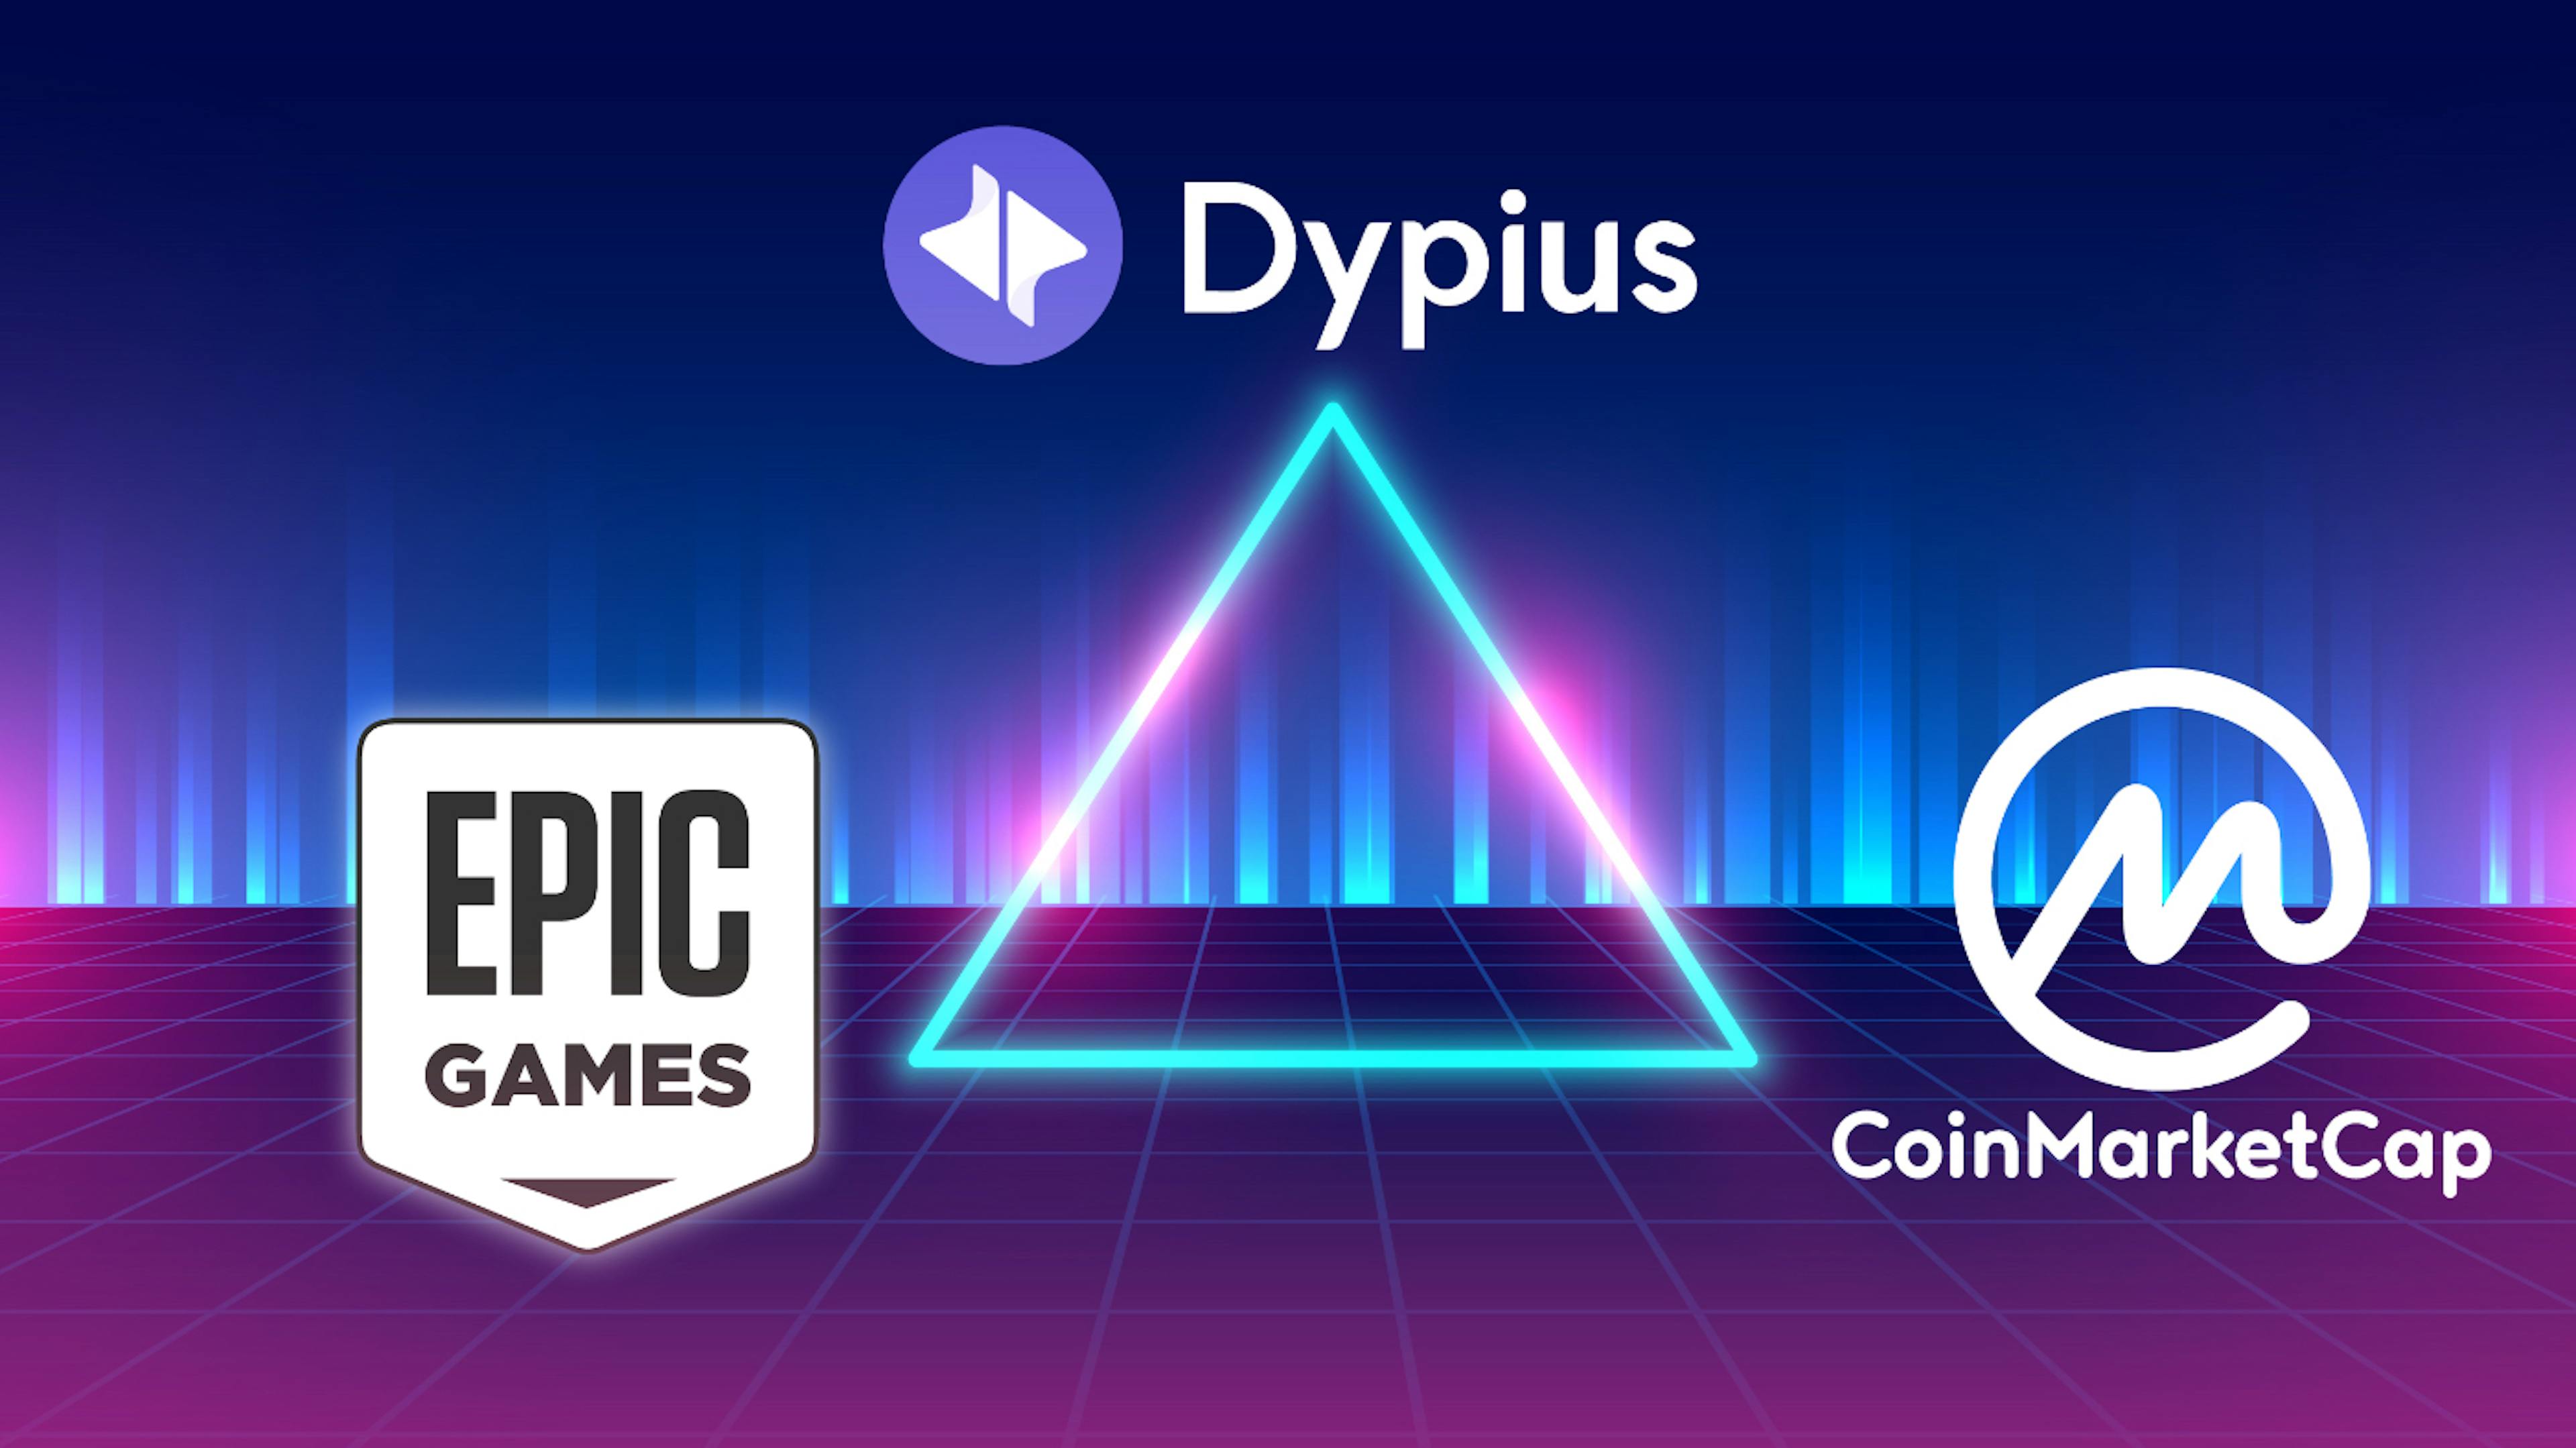 featured image - World of Dypians accueille CoinMarketCap dans son métaverse dynamique, désormais disponible sur Epic Games Store